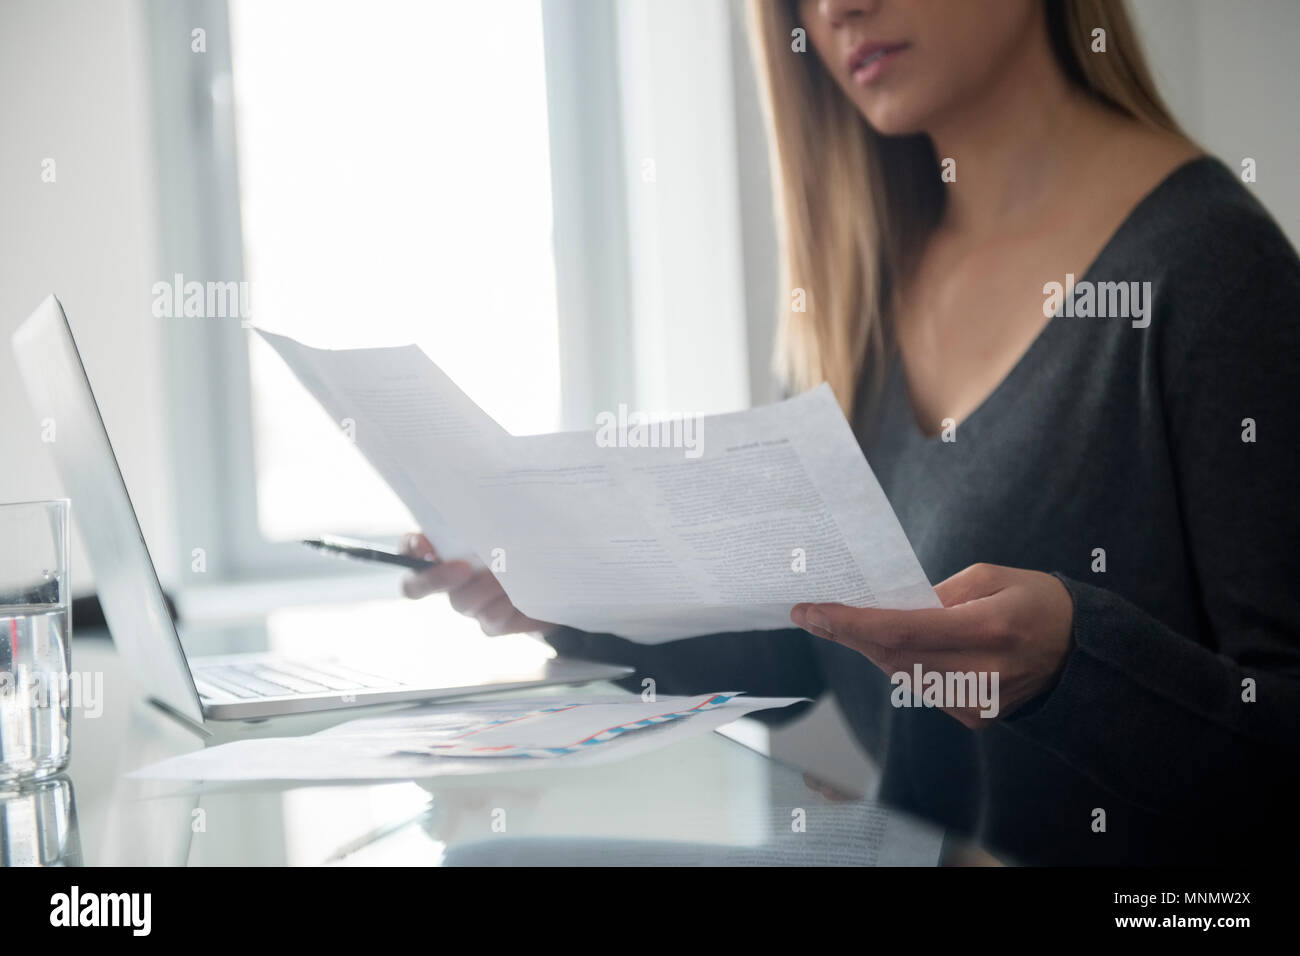 Jeune femme faisant un travail papier Banque D'Images